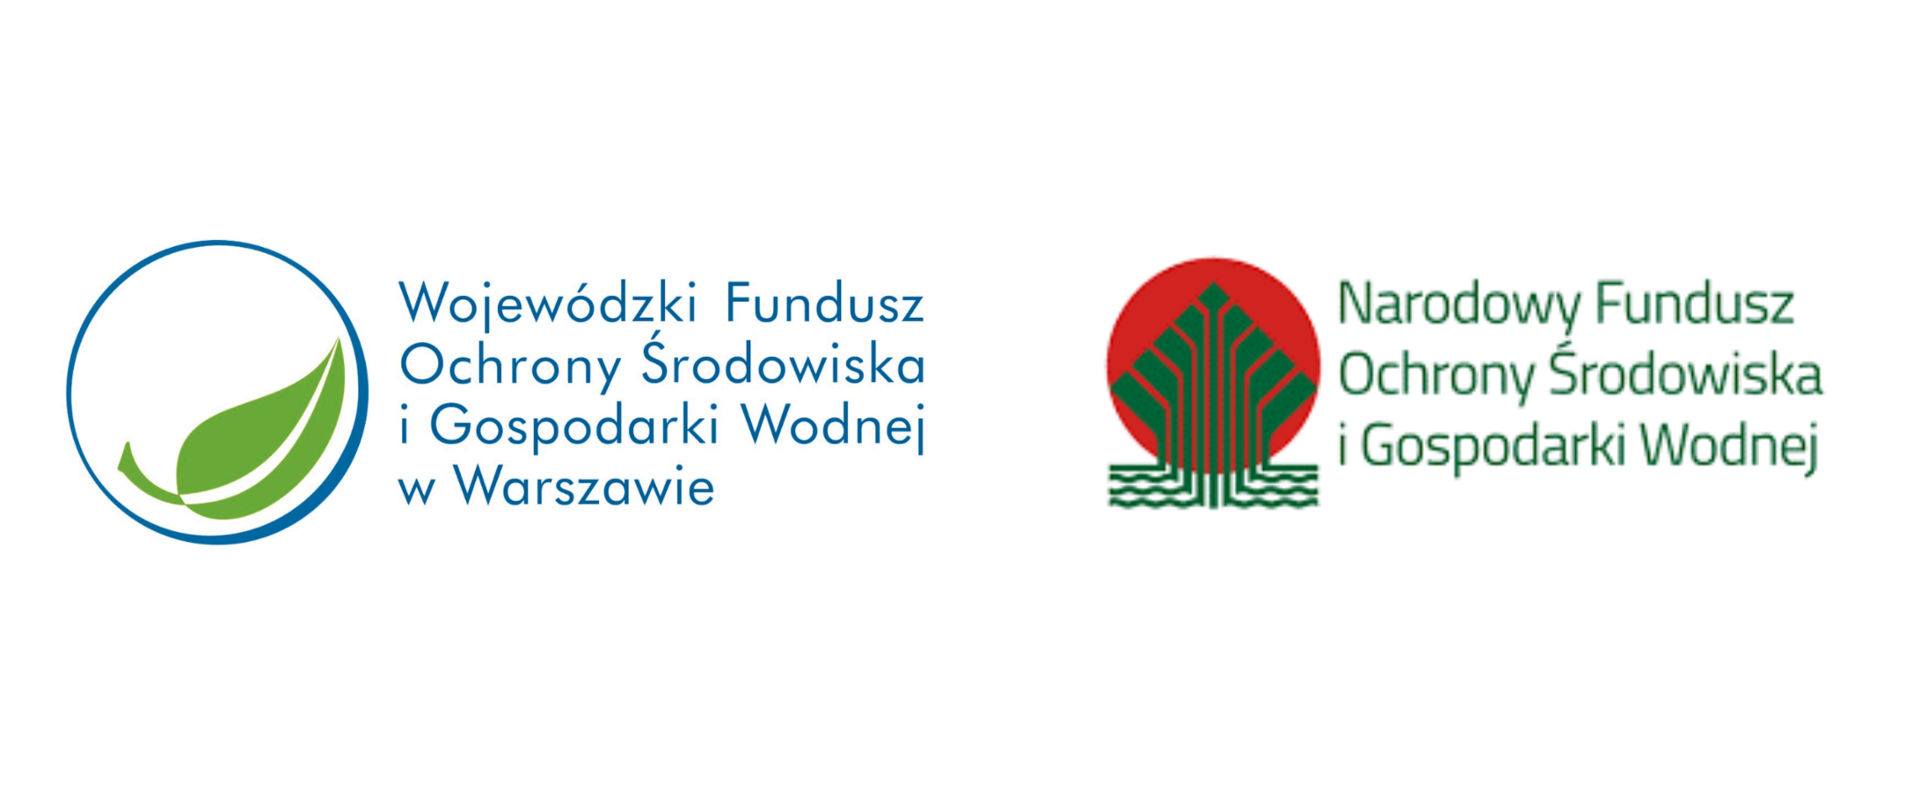 Logotypy: Wojewódzki Fundusz Ochrony Środowiska i Gospodarki Wodnej w Warszawie, Narodowy Fundusz Ochrony Środowiska i Gospodarki Wodnej